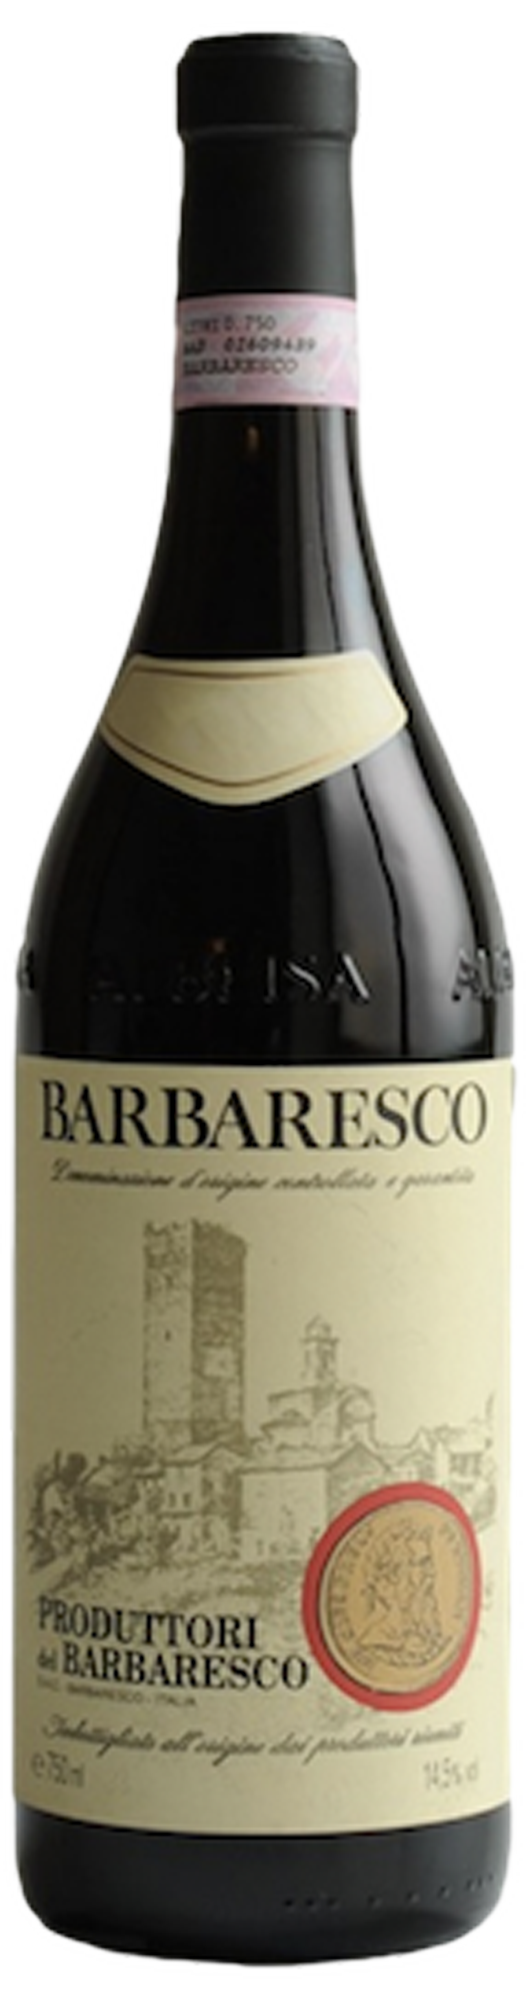 Bottle shot of 2012 Barbaresco